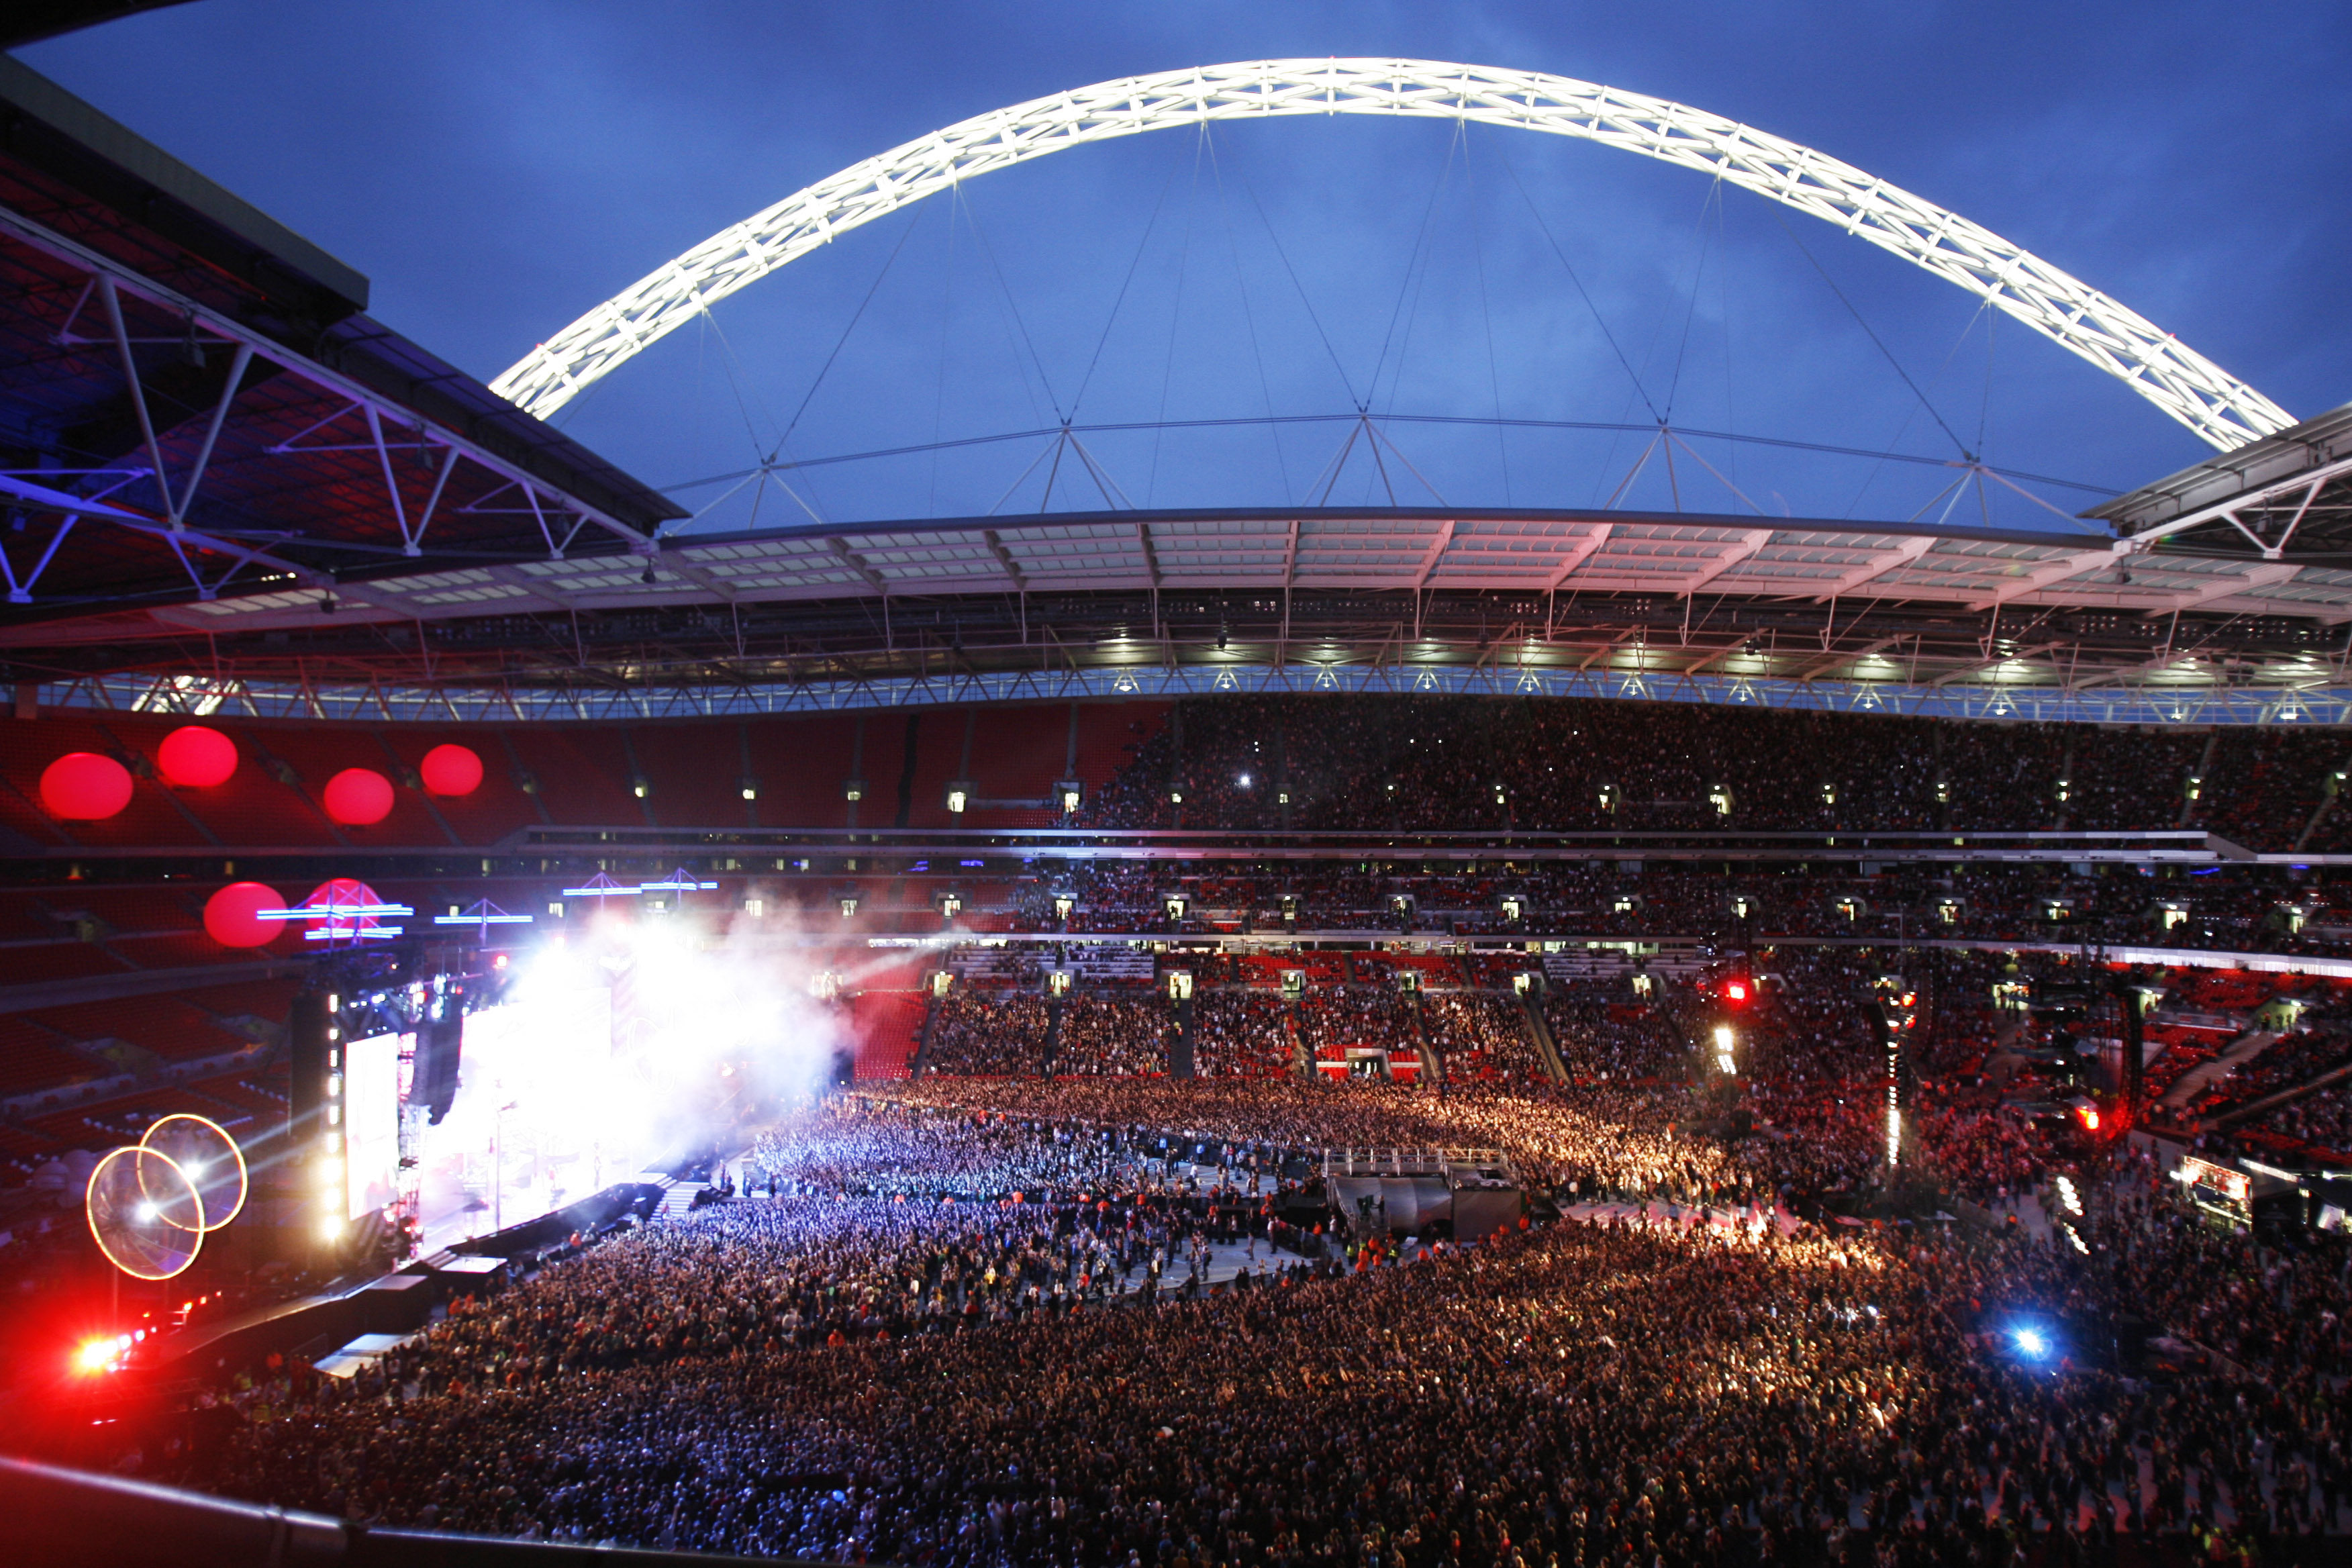 Wembley arena. Стадион Уэмбли. Стадион «Уэмбли»,Англия. Стадион Уэмбли Лондон (Wembley Stadium). Стадион Уэмбли в Лондоне концерты.